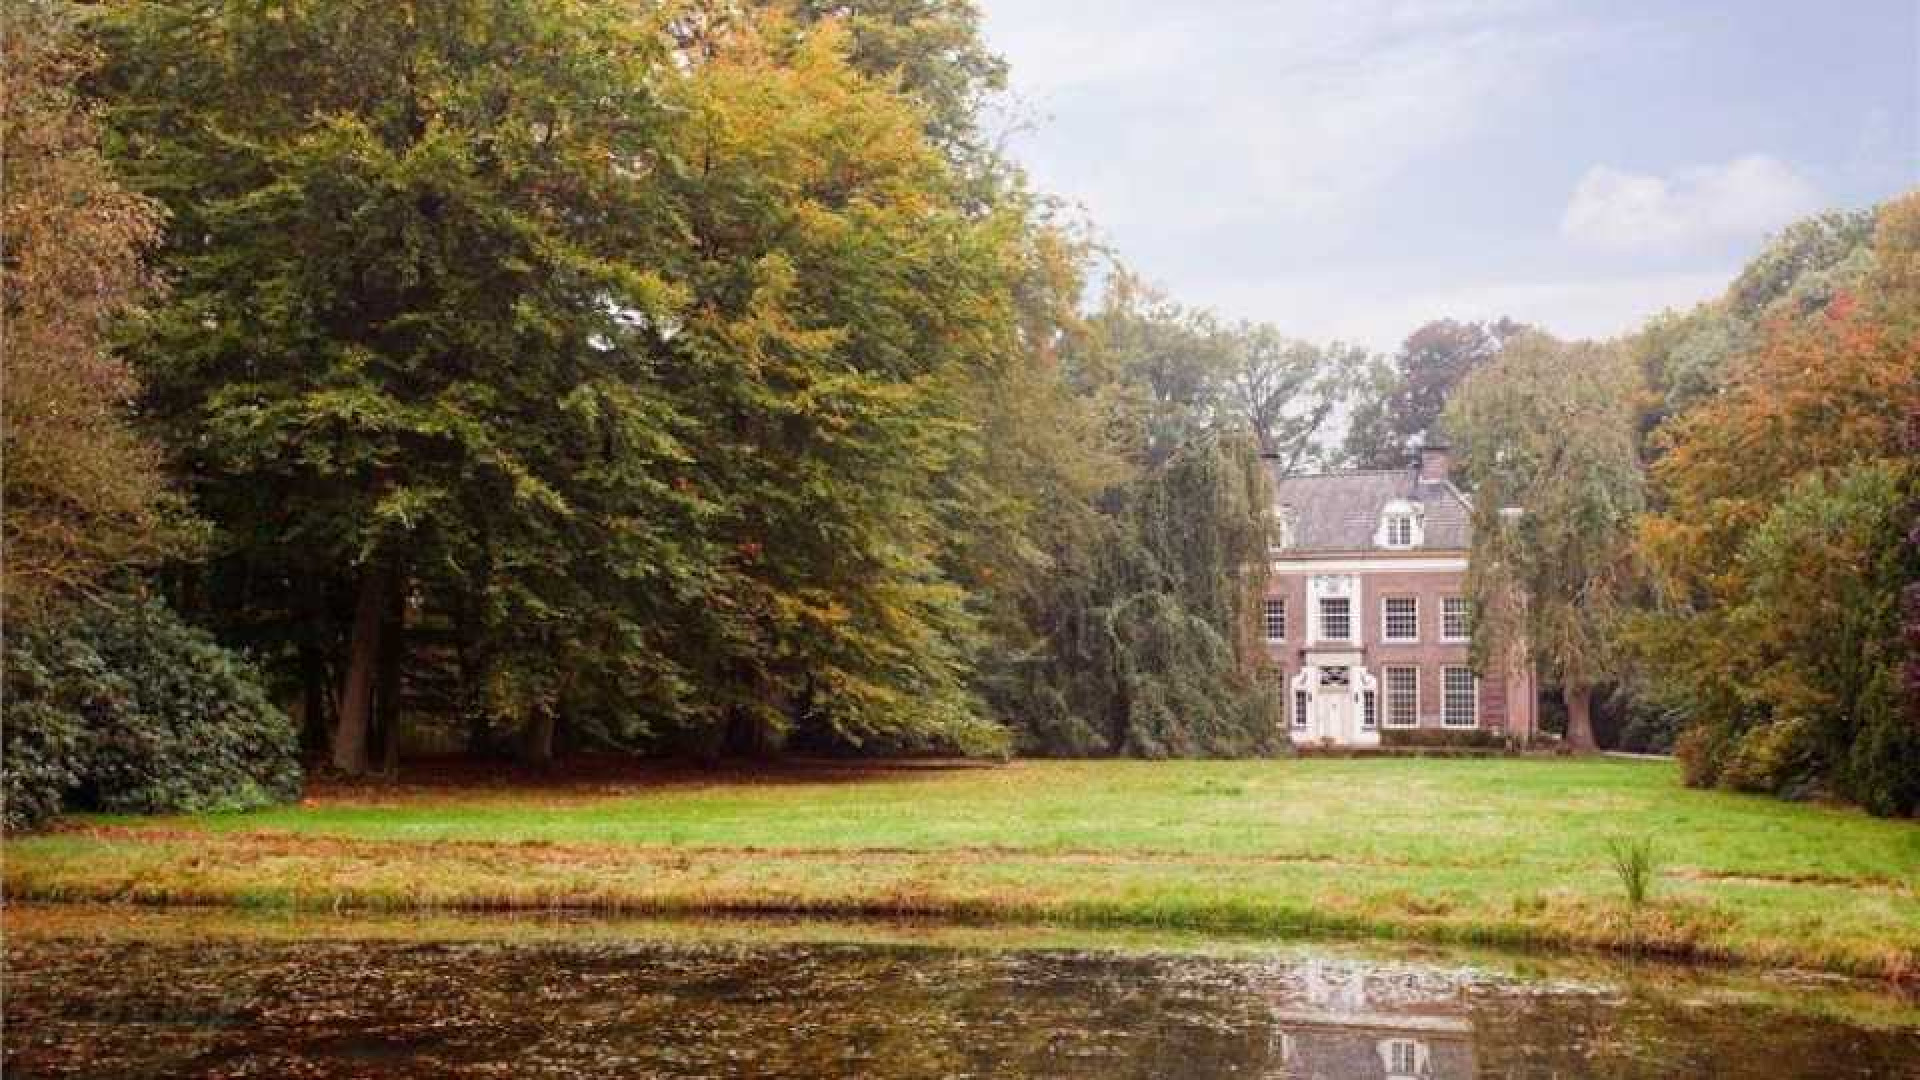 Oud PvdA topman Marcel van Dam verruilt riant landhuis voor eeuwenoud kasteel. Zie foto's 18